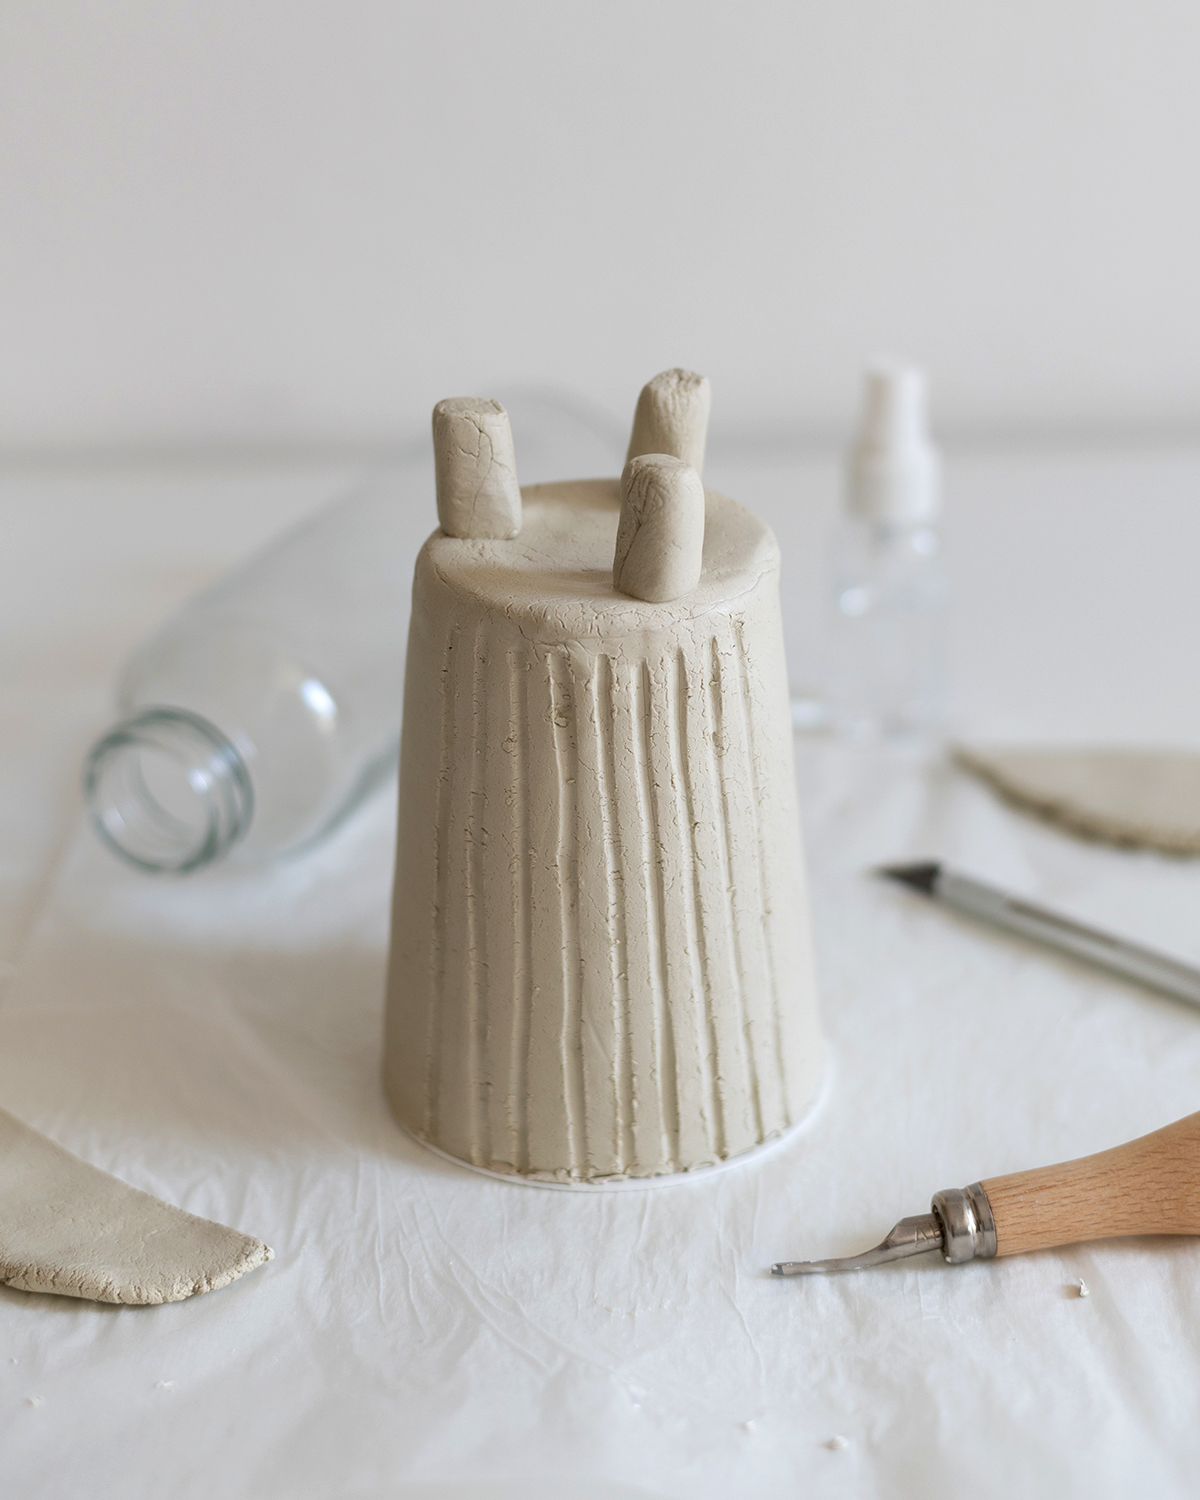 Clay-Topf mit Füssen: DIY | we love handmade